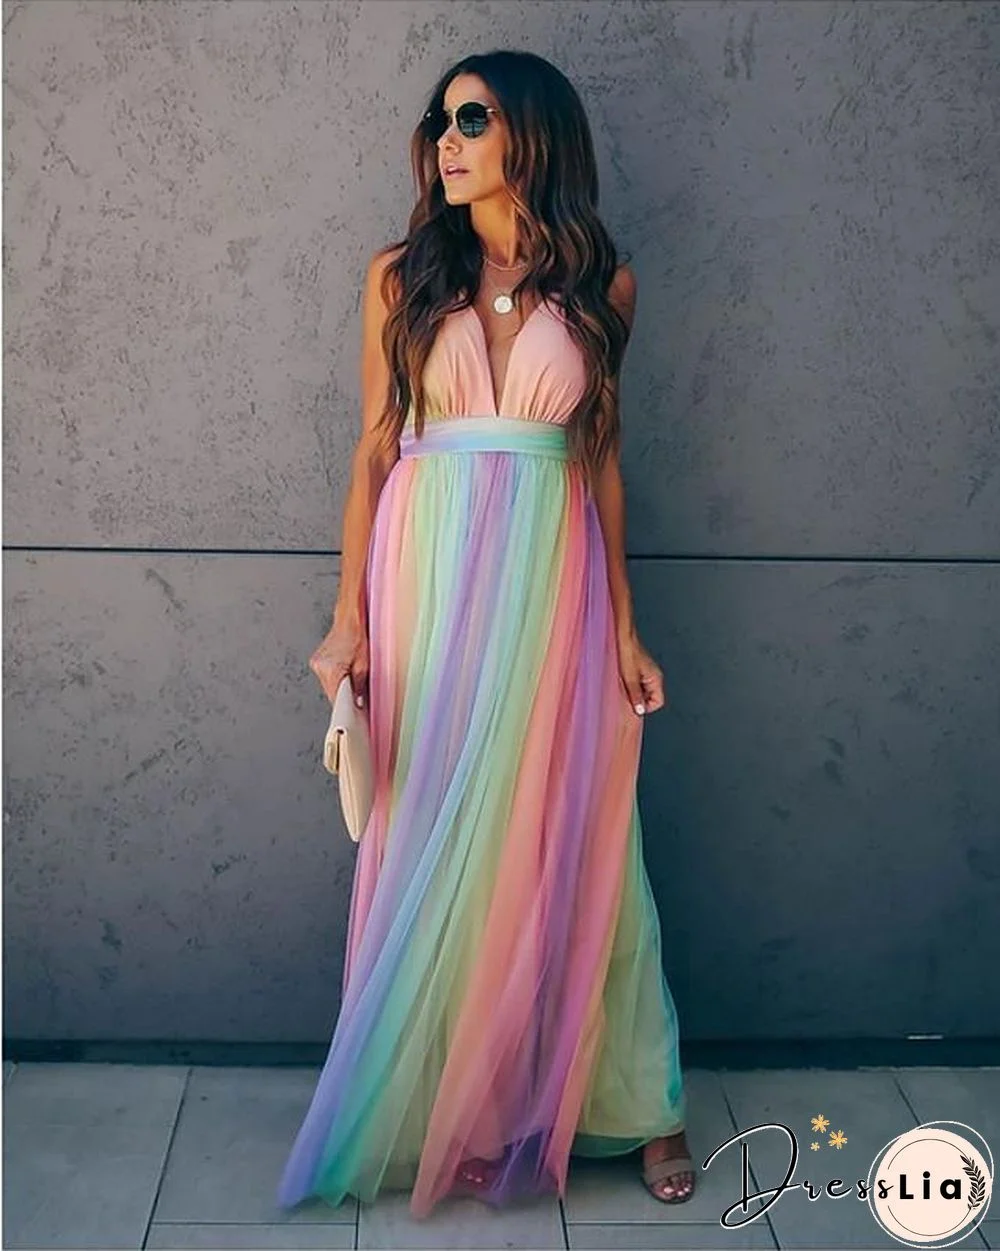 Women's Swing Dress Maxi long Dress Sleeveless Print Zipper Mesh Summer Sexy Rainbow S M L XL XXL